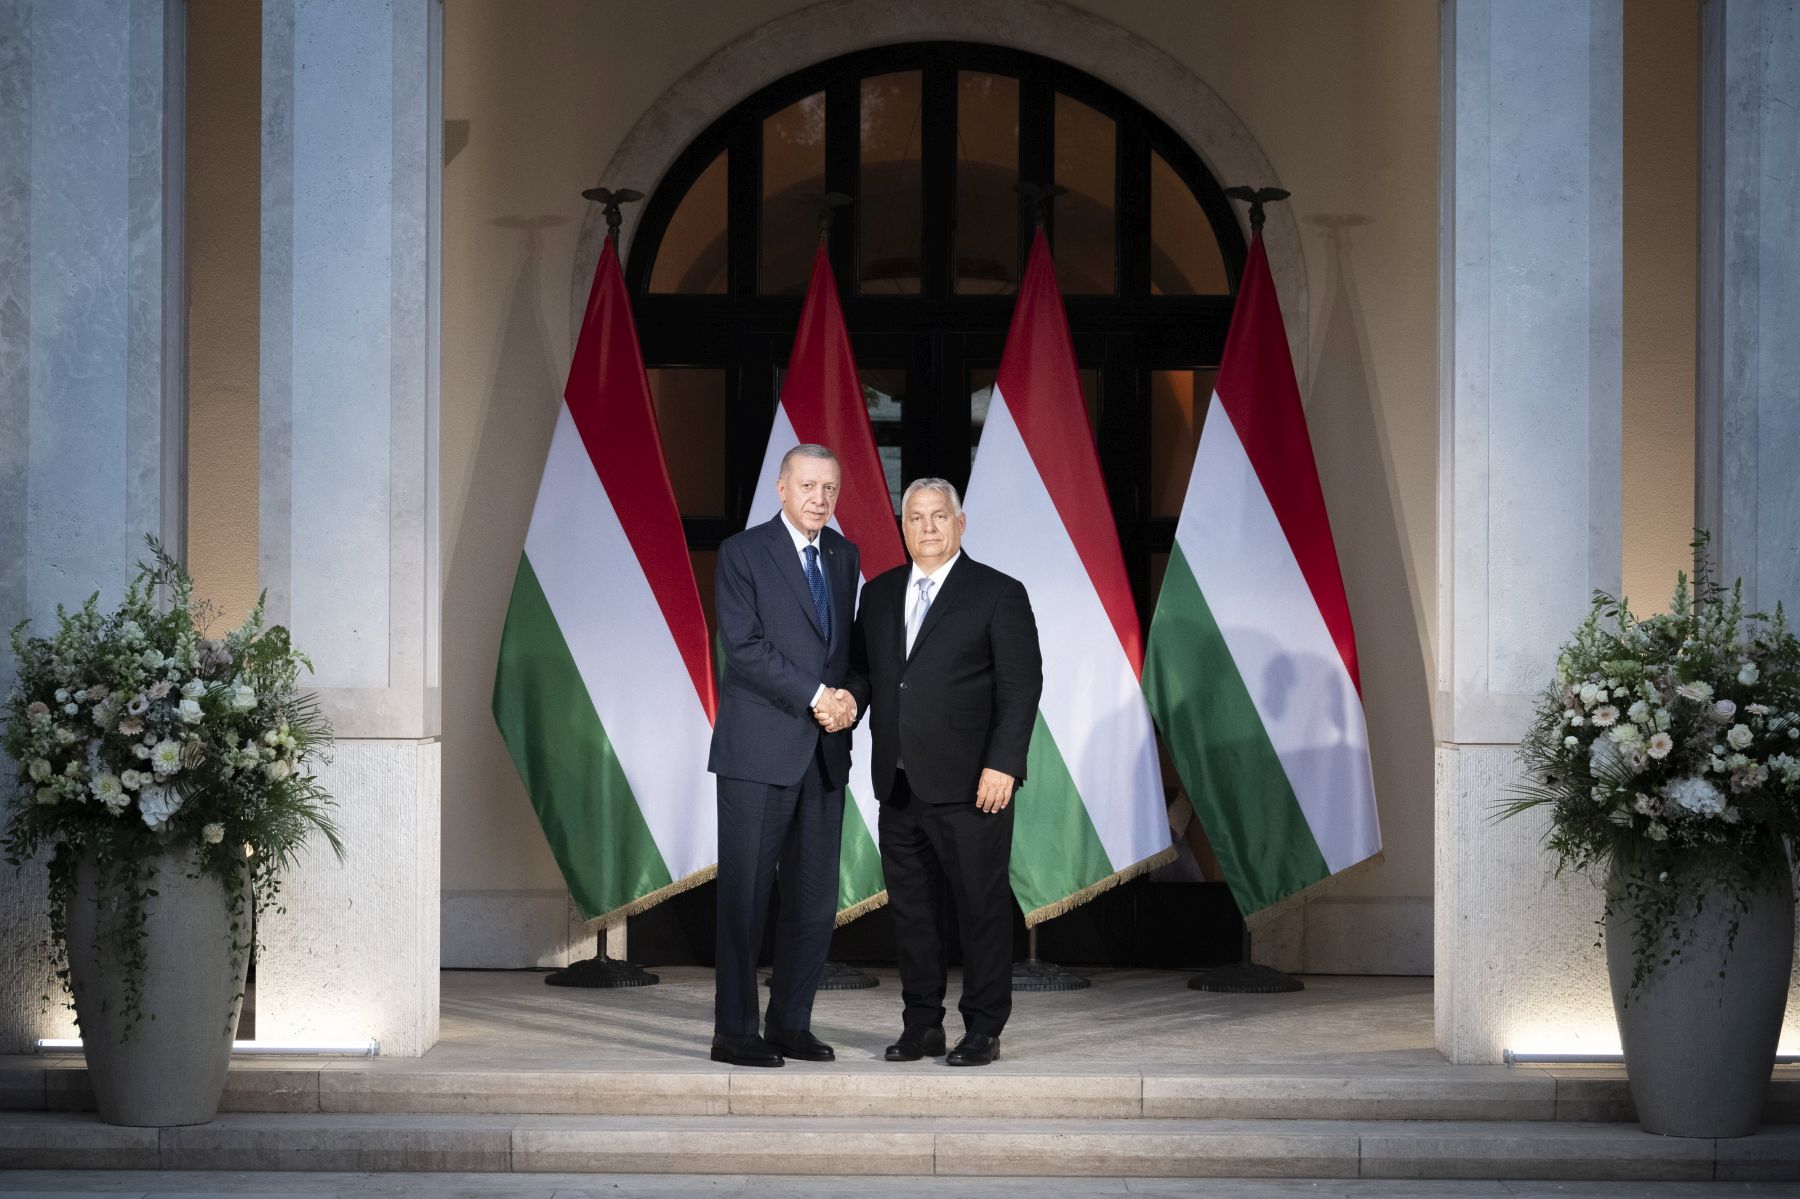 Erdogannak Magyarországon azt is tűrnie kellene, ha tüntetnek ellene